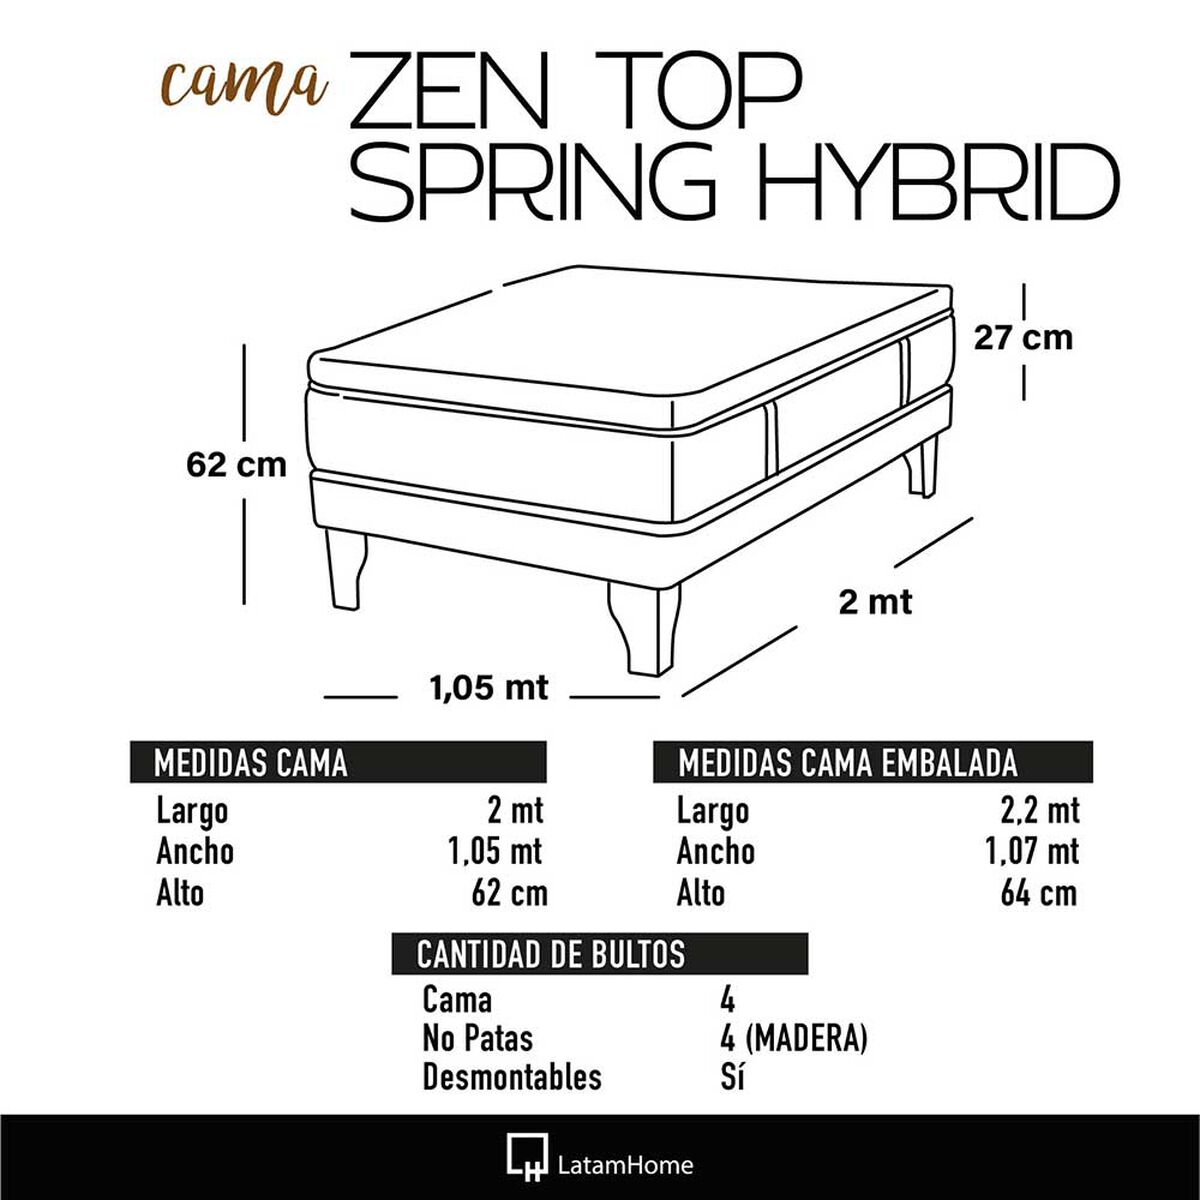 Cama Europea Latam Home 1,5 Plazas Zen Top Spring Hybrid Velvet Azul Petróleo